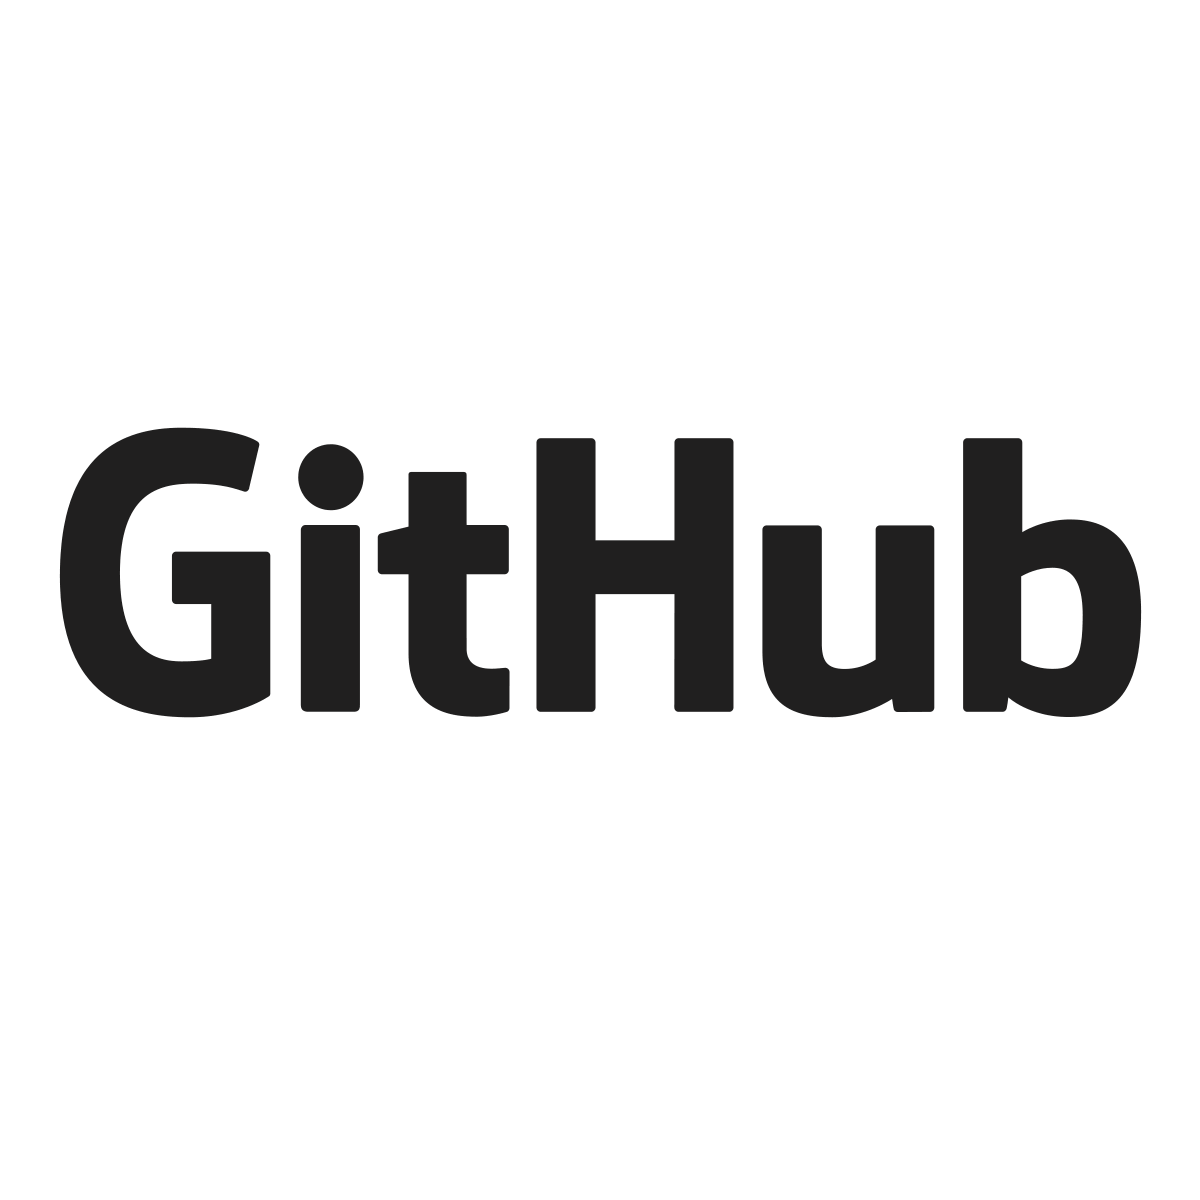 エクスプローラー - GitHub Docs